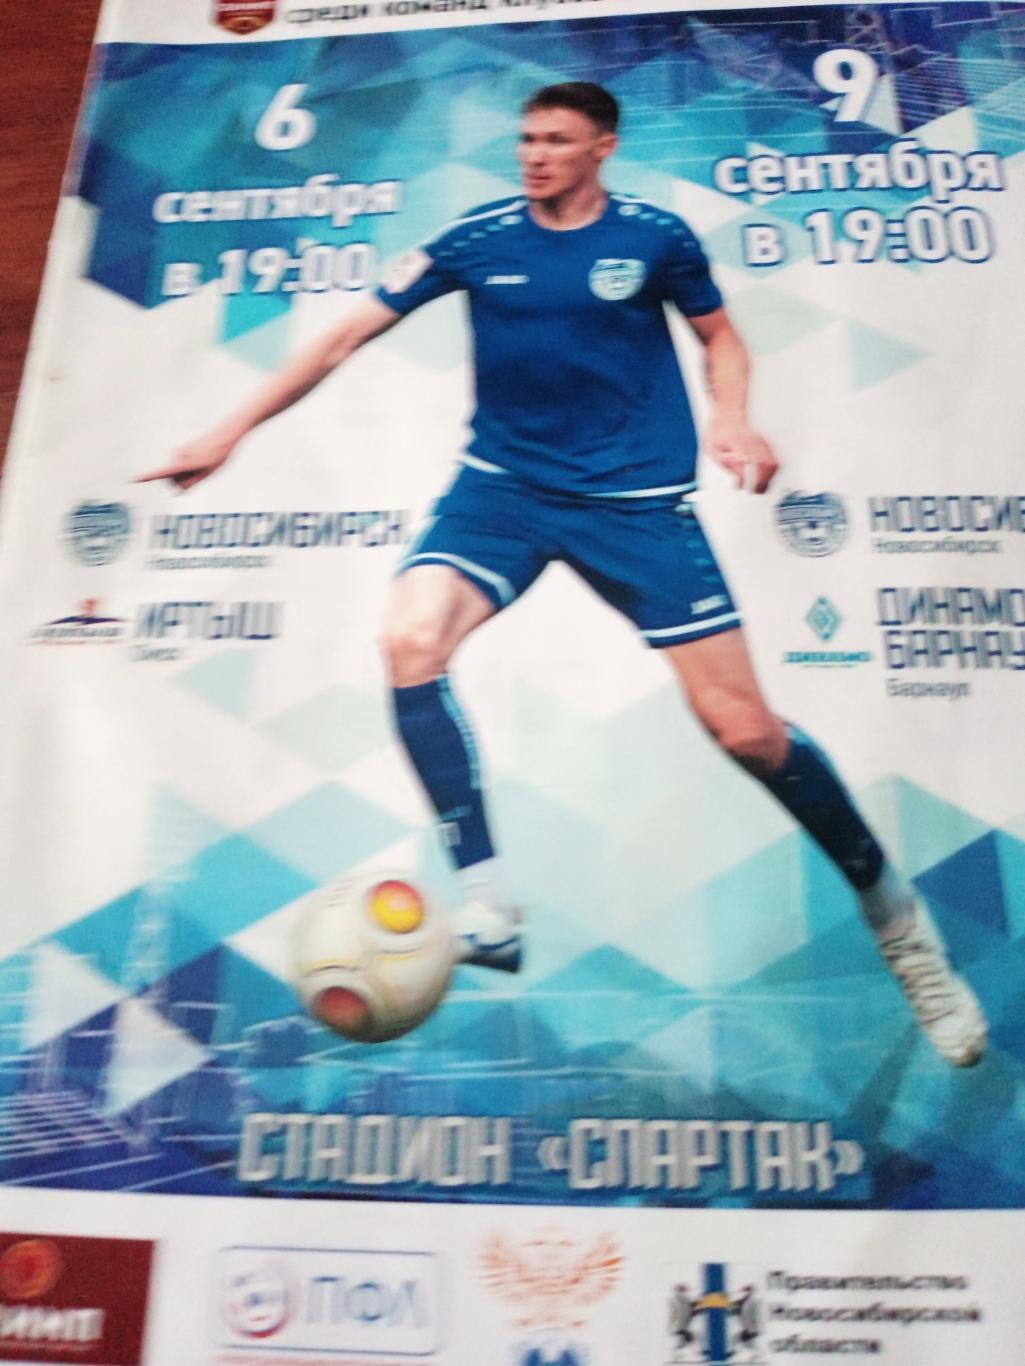 ФК Новосибирск, 2019 г - Иртыш, Динамо Барнаул (6 и 9 сентября)